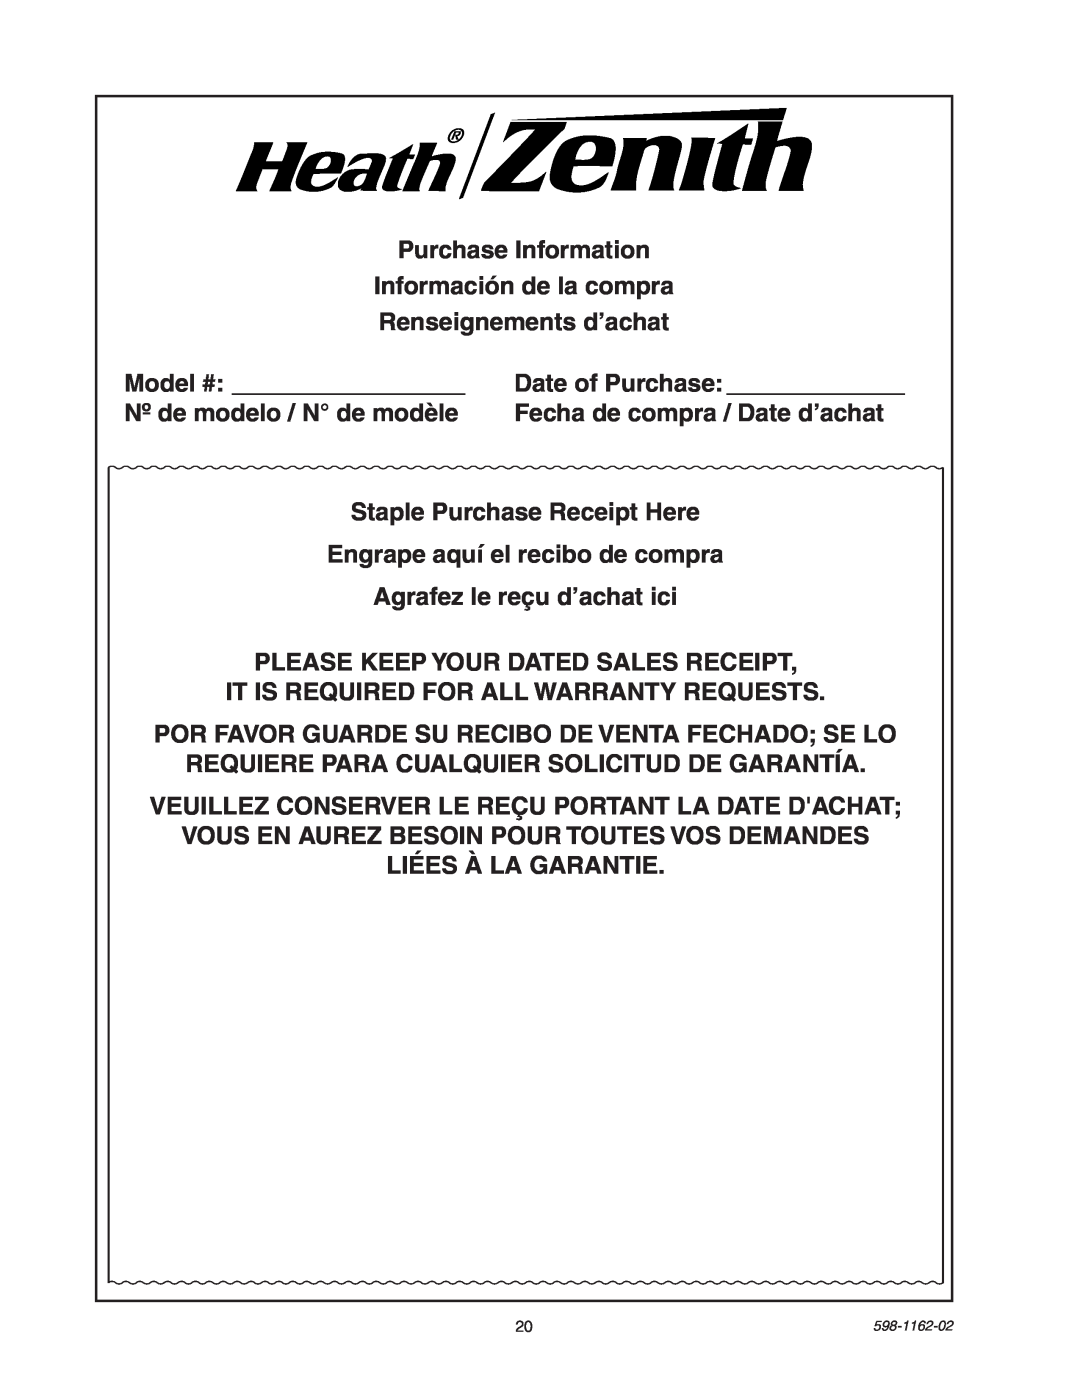 Heath Zenith SH-5597 manual Purchase Information Información de la compra 